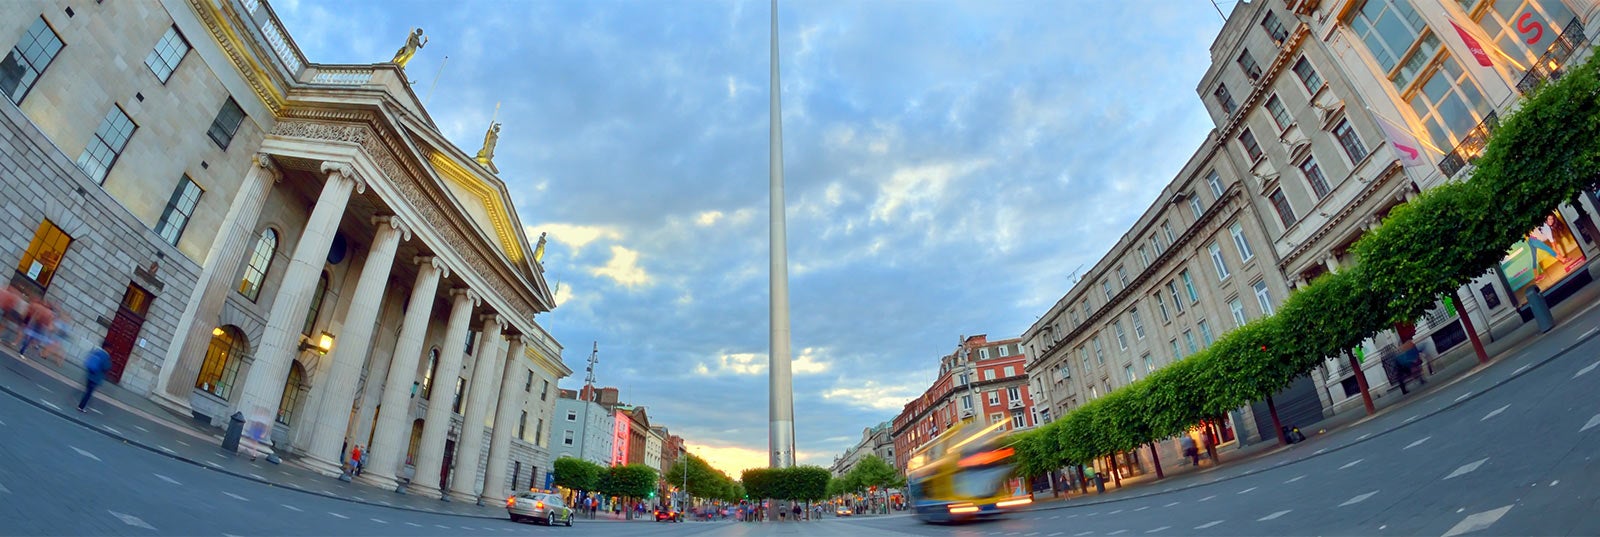 Guía turística de Dublín